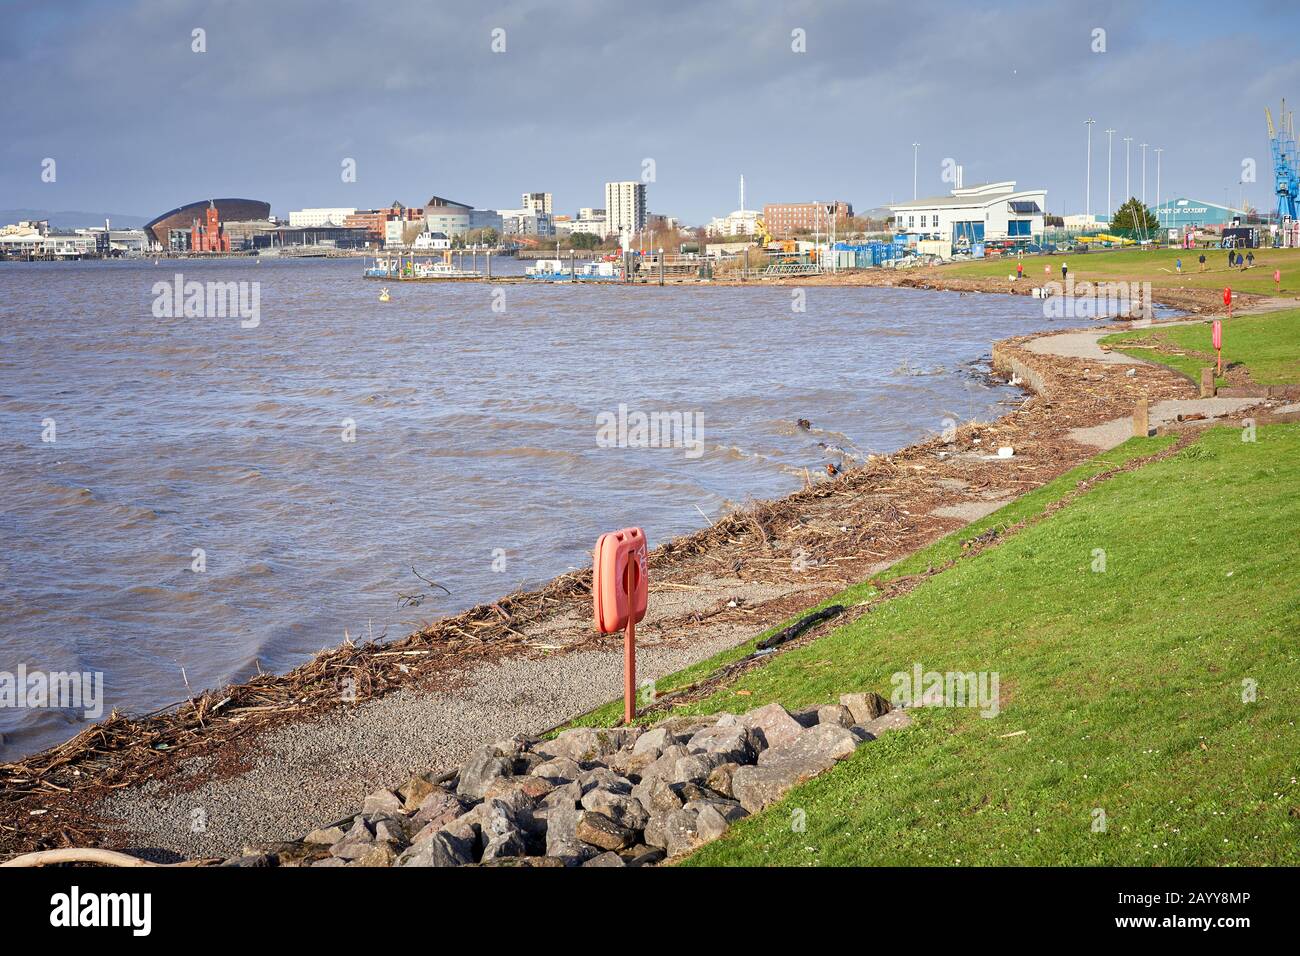 Des débris et du bois dérivant s'est lavé sur le rivage de la baie de Cardiff après que la tempête Dennis a rempli les rivières Taff et Ely Banque D'Images